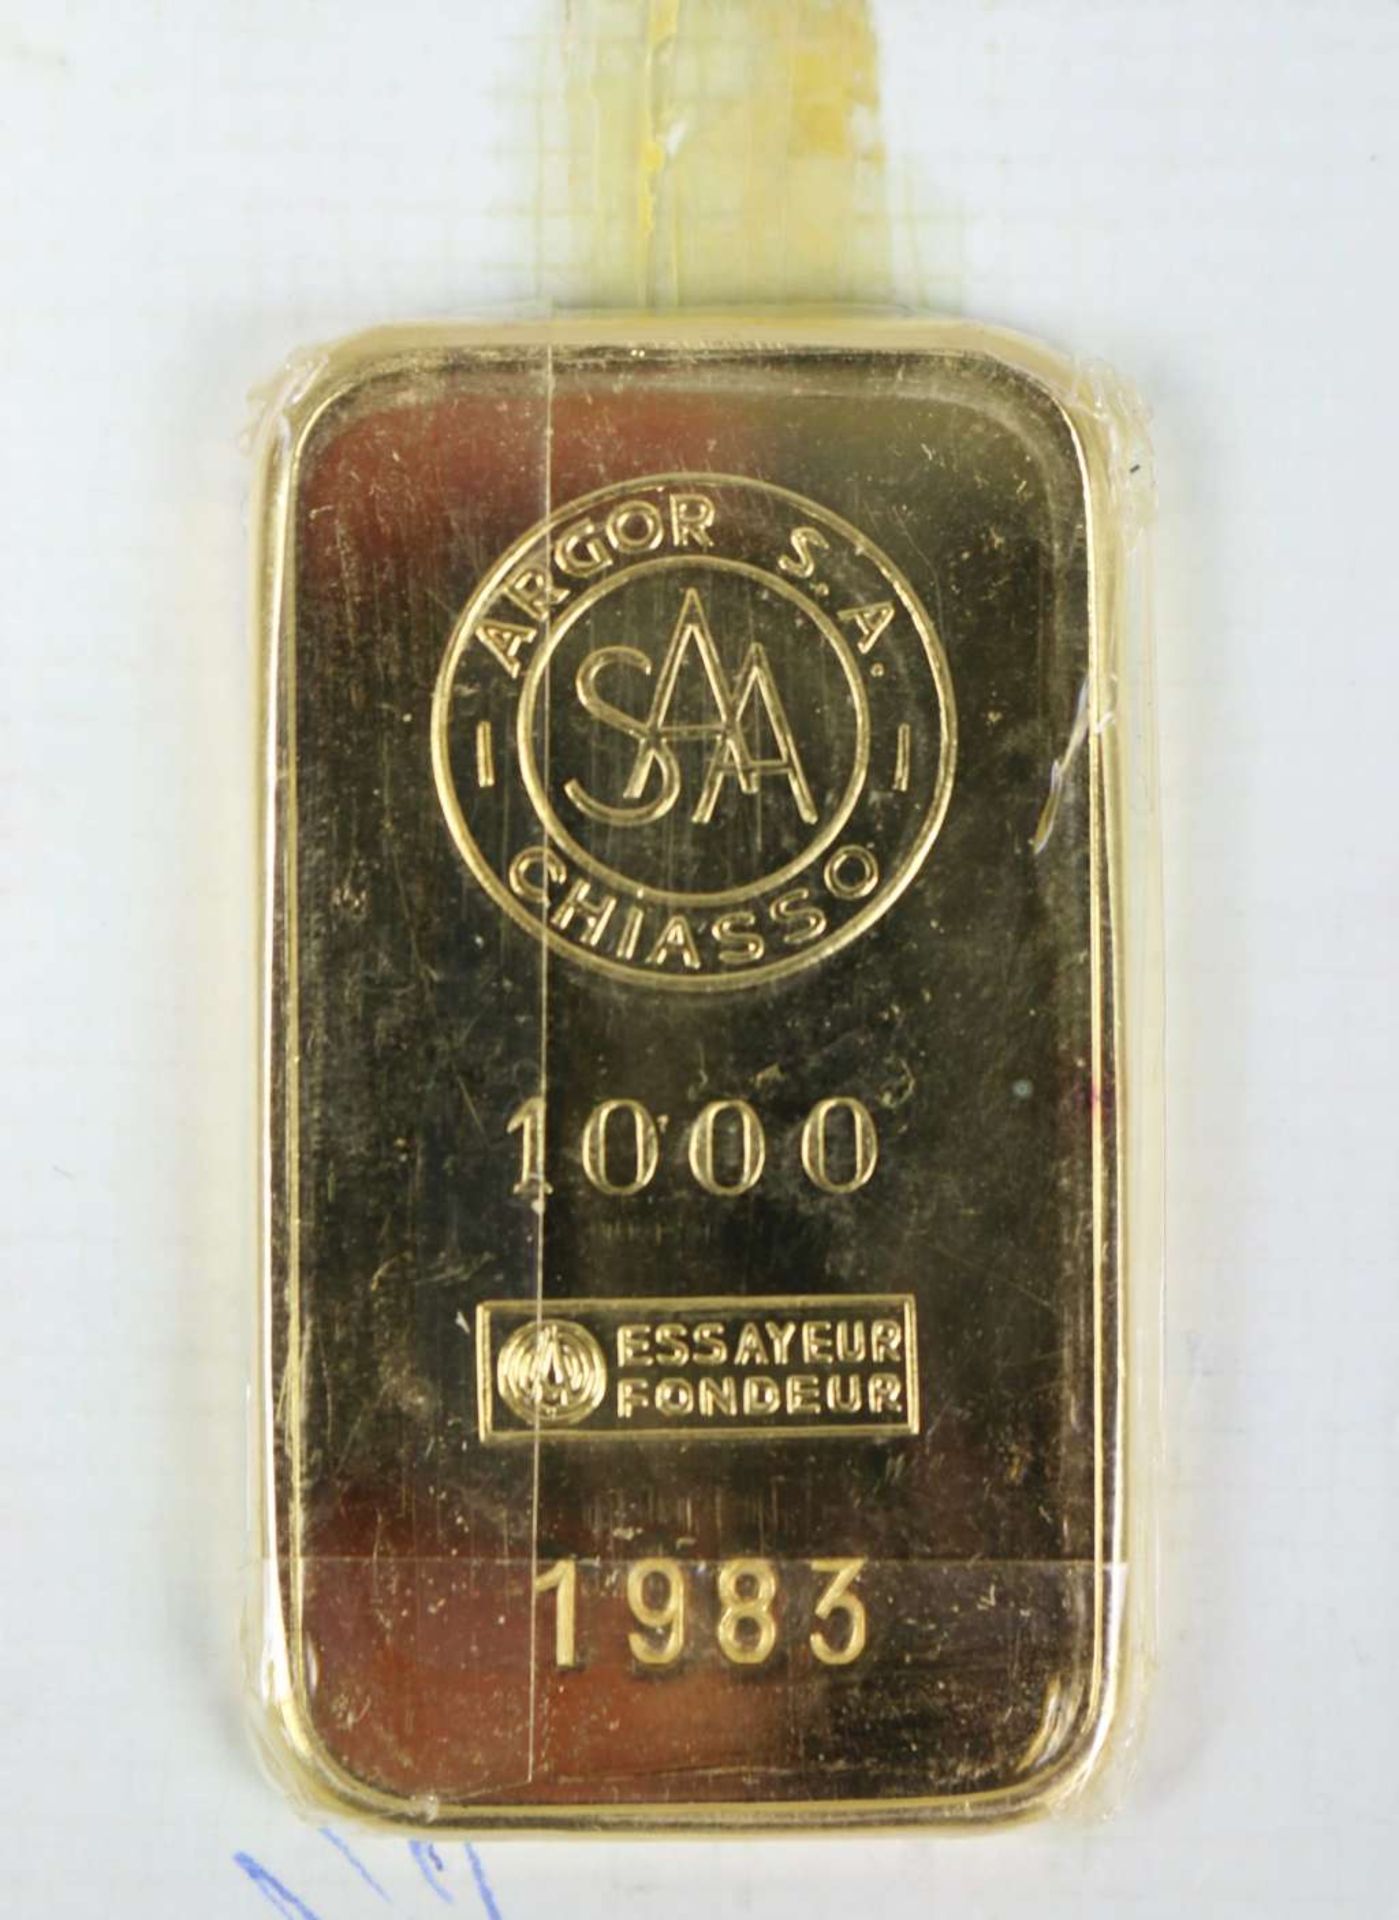 Goldbarren 100 Gramm bez. "ARGOR S.A. CHIASSO 1000 ESSAYEUR FONDEUR", Nr. 1983 von 1961 - Bild 2 aus 2